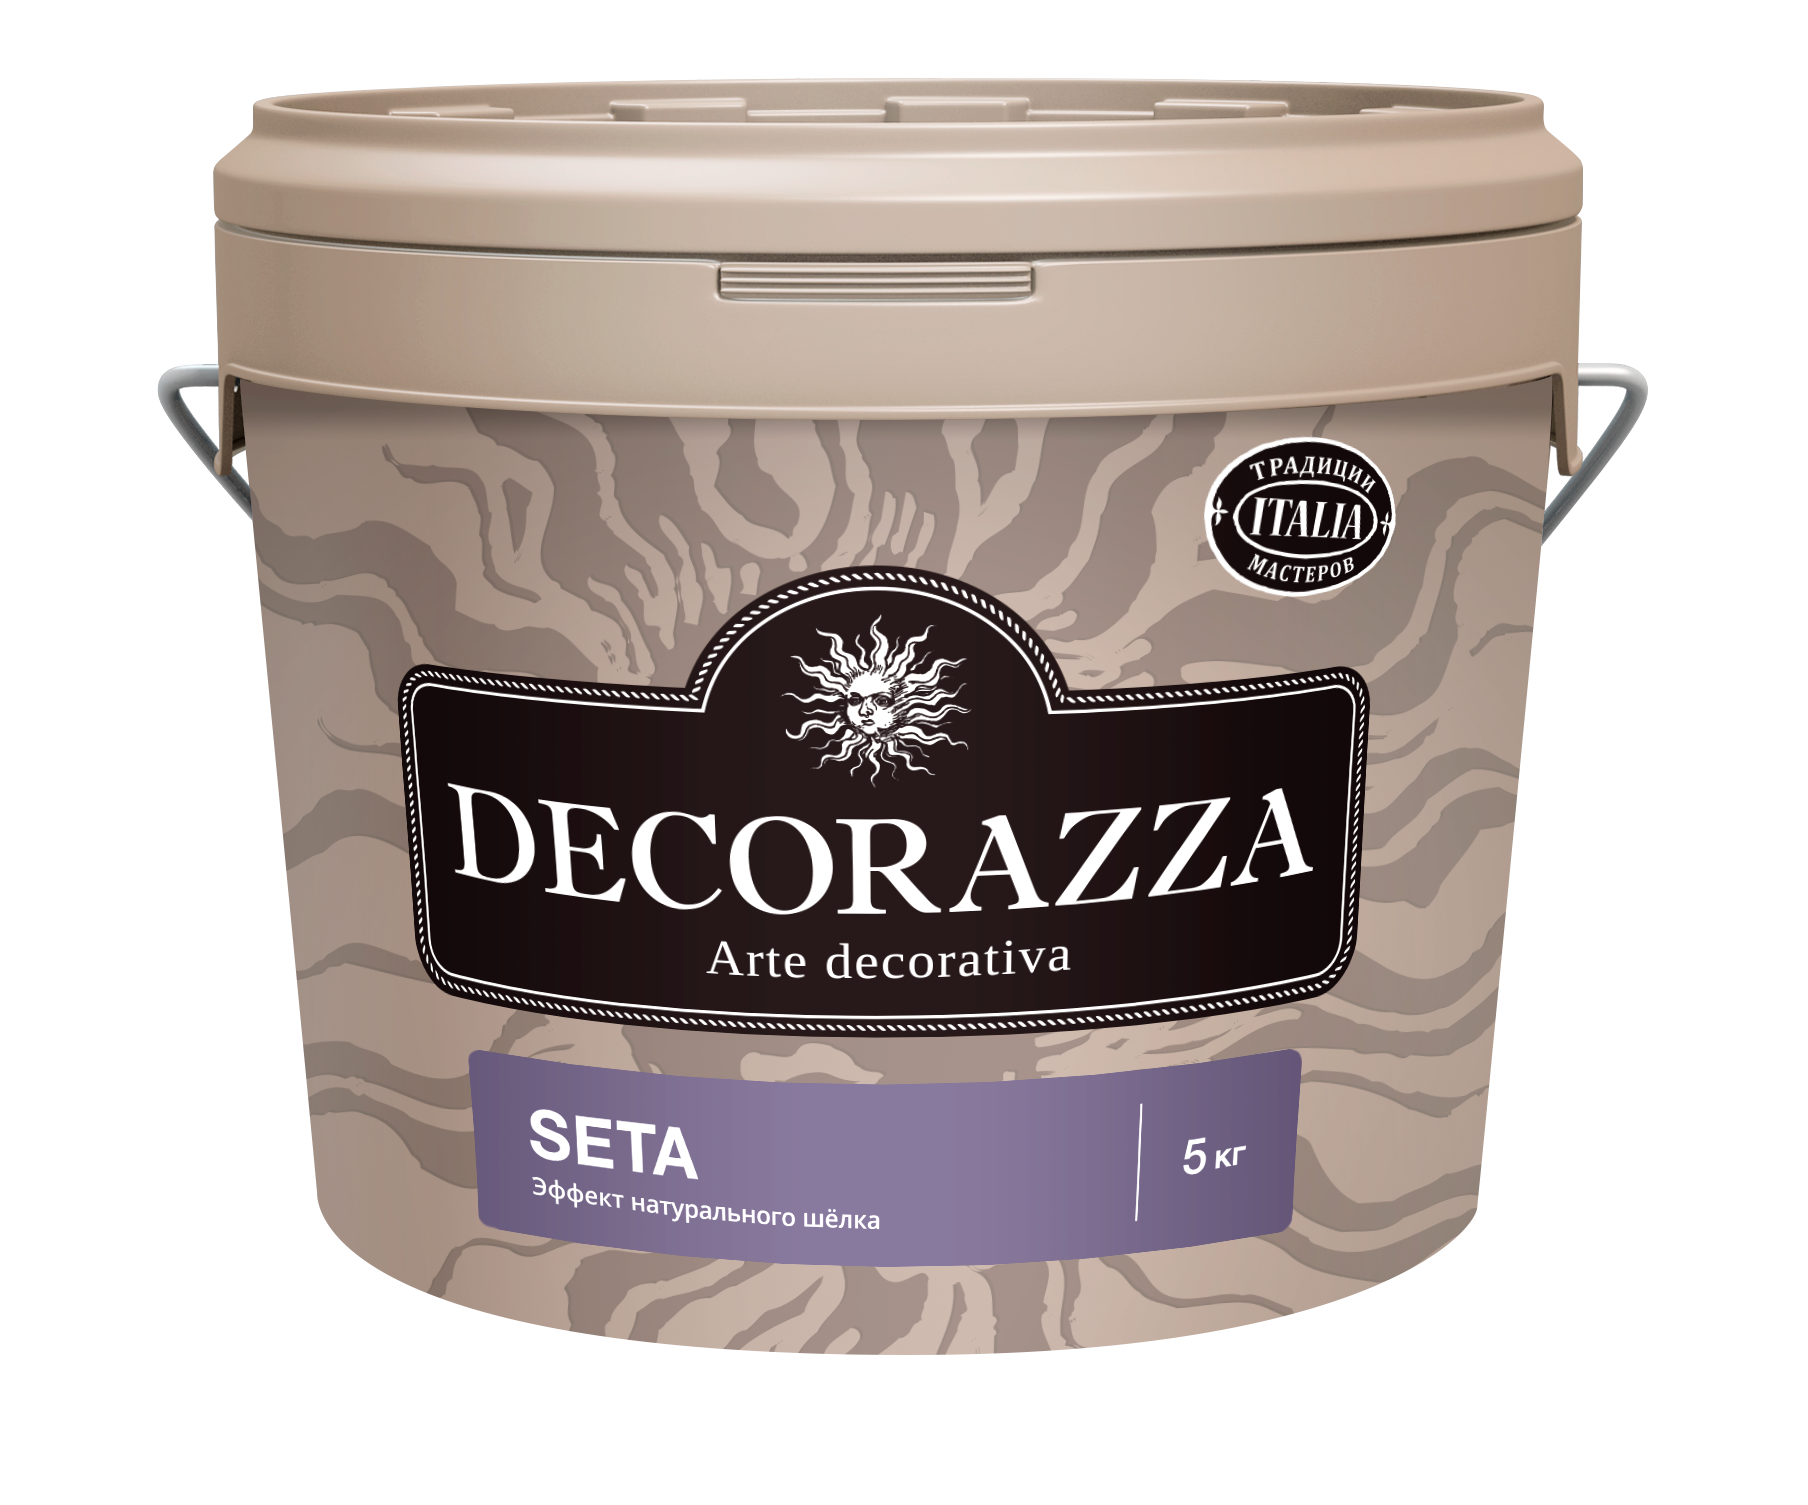 Декоративная штукатурка Decorazza Seta Argento ST 001, серебро, 5 кг